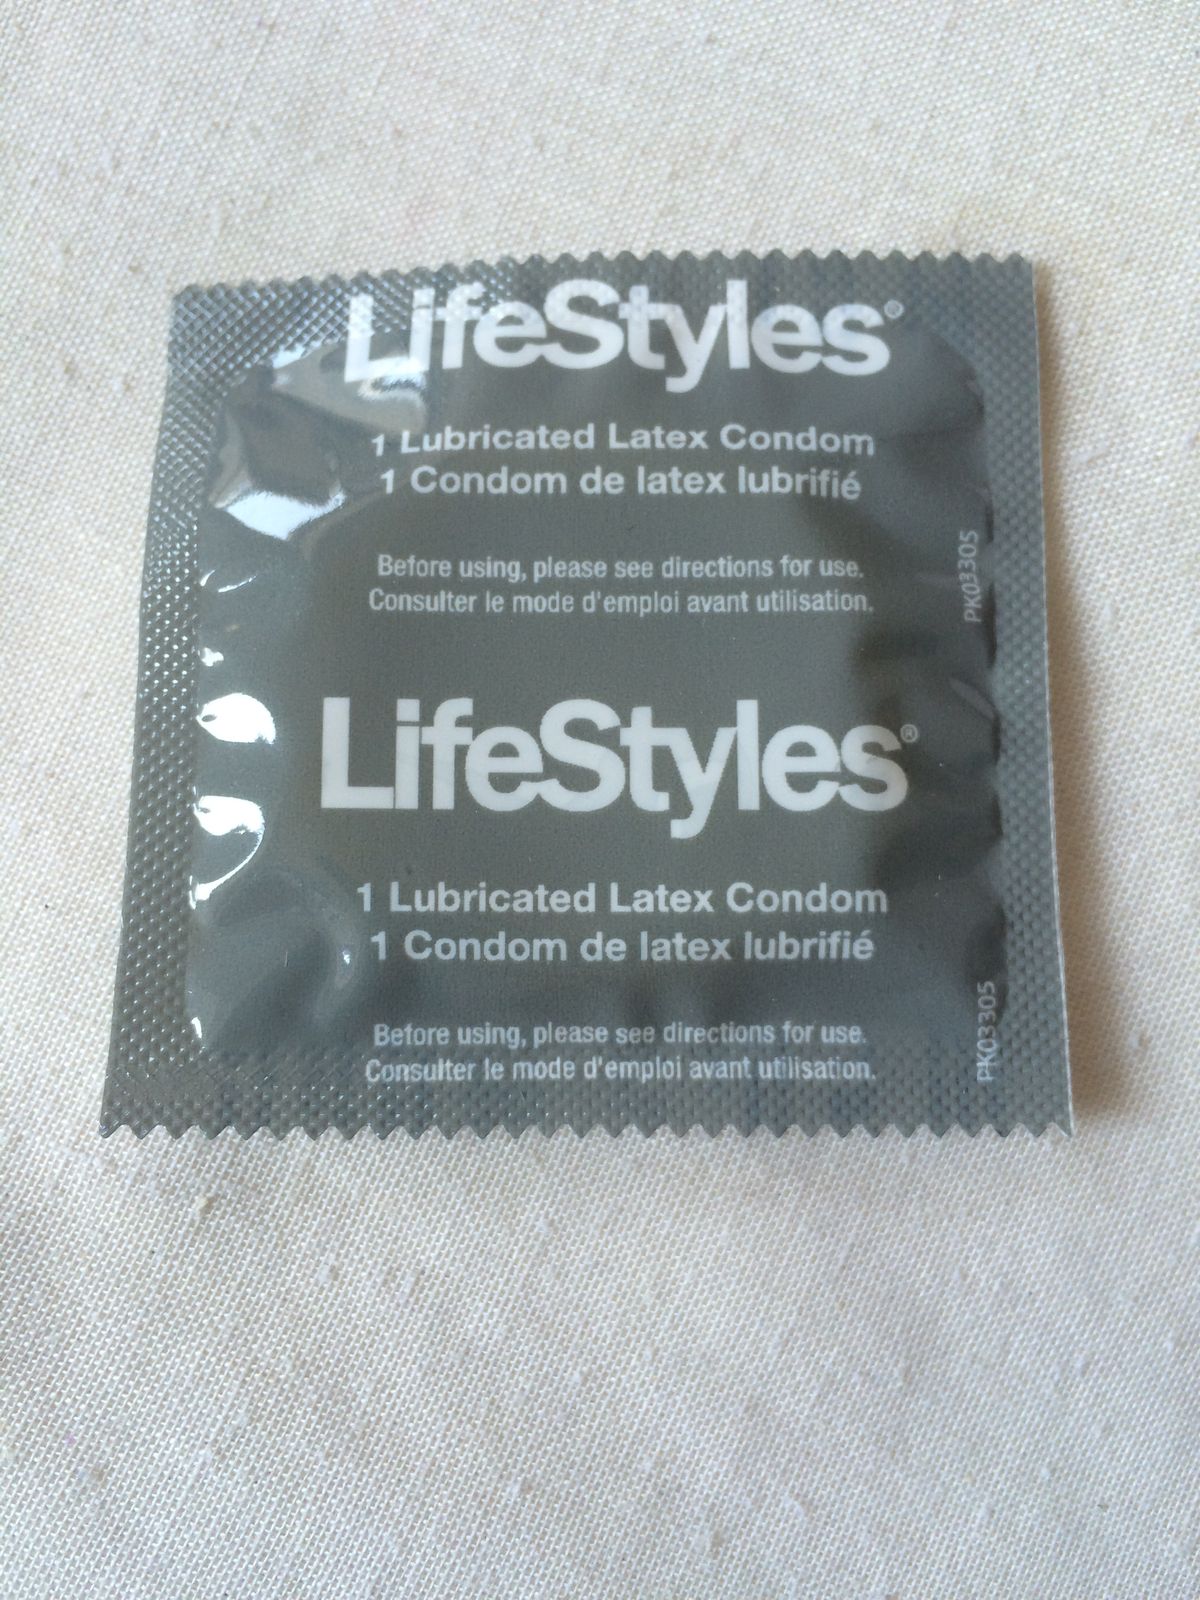 Ispitao sam 7 kondoma i evo kako se slažu